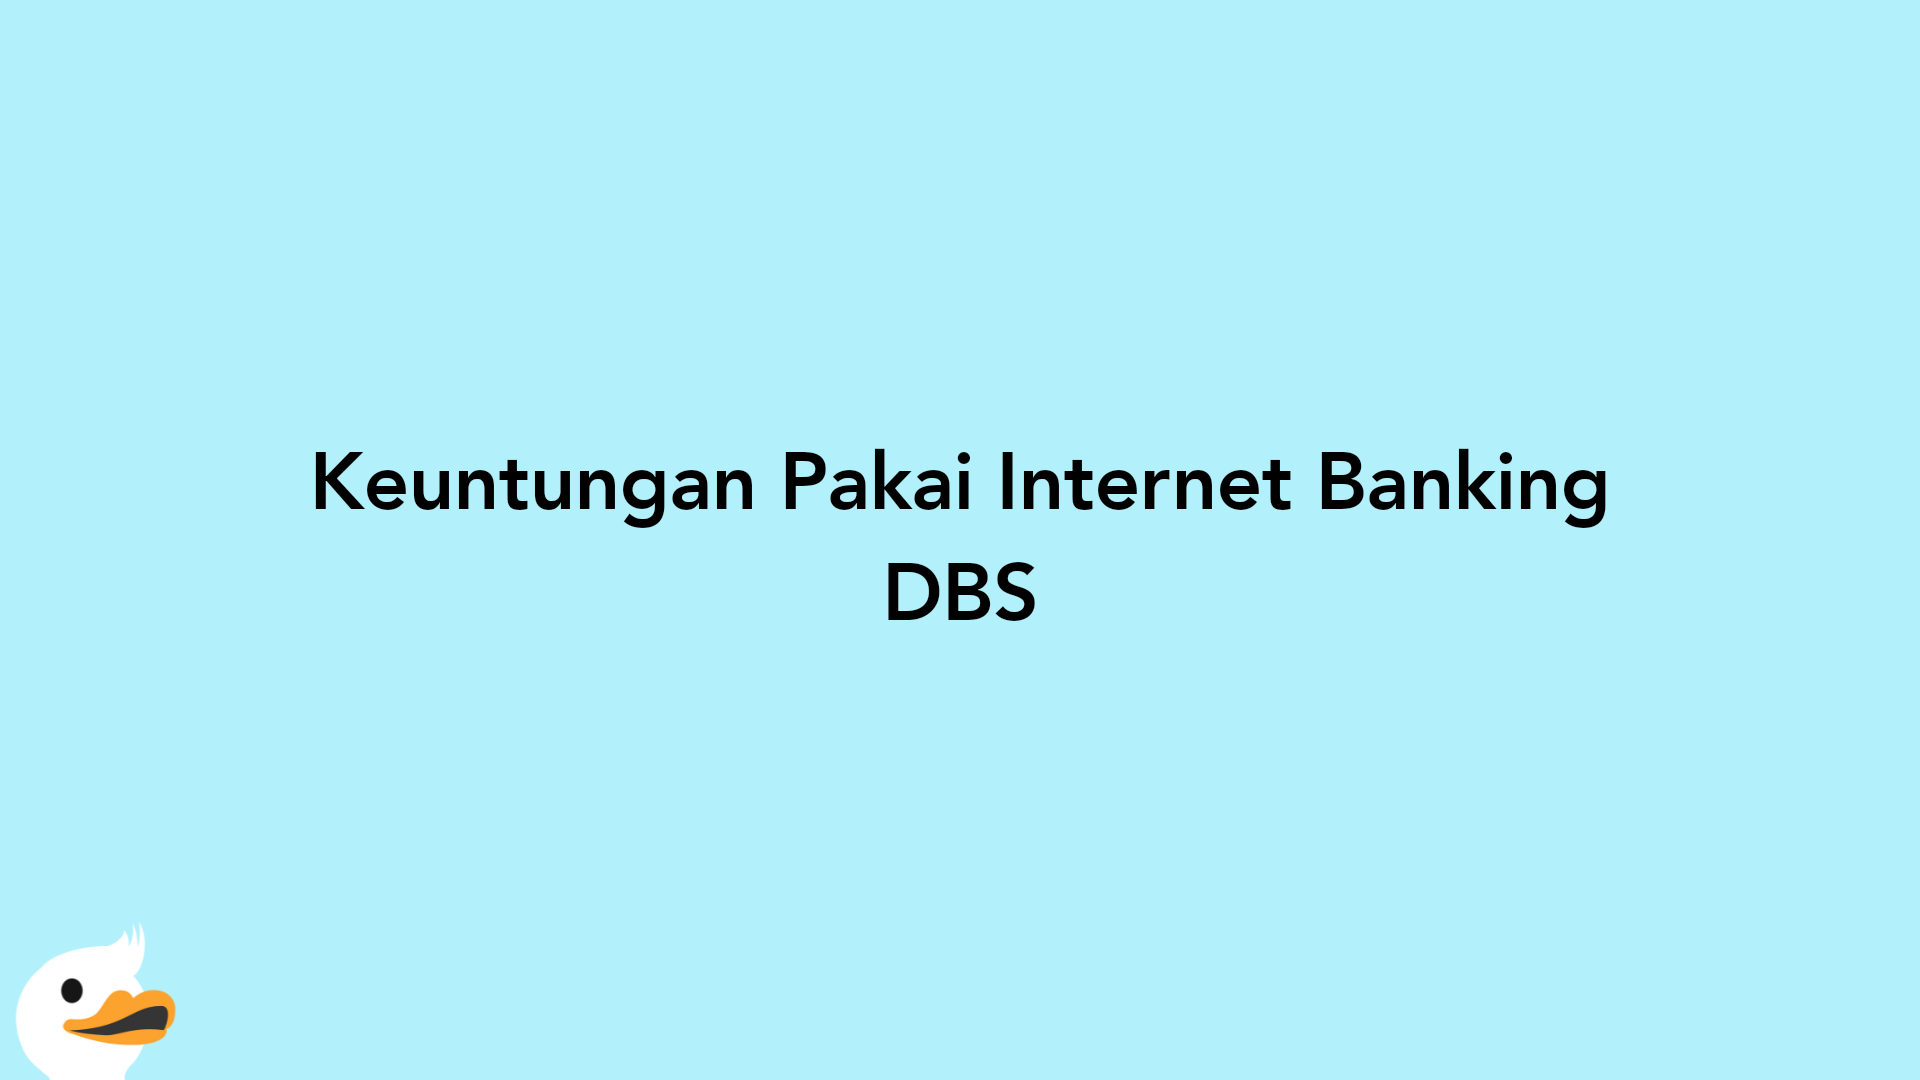 Keuntungan Pakai Internet Banking DBS